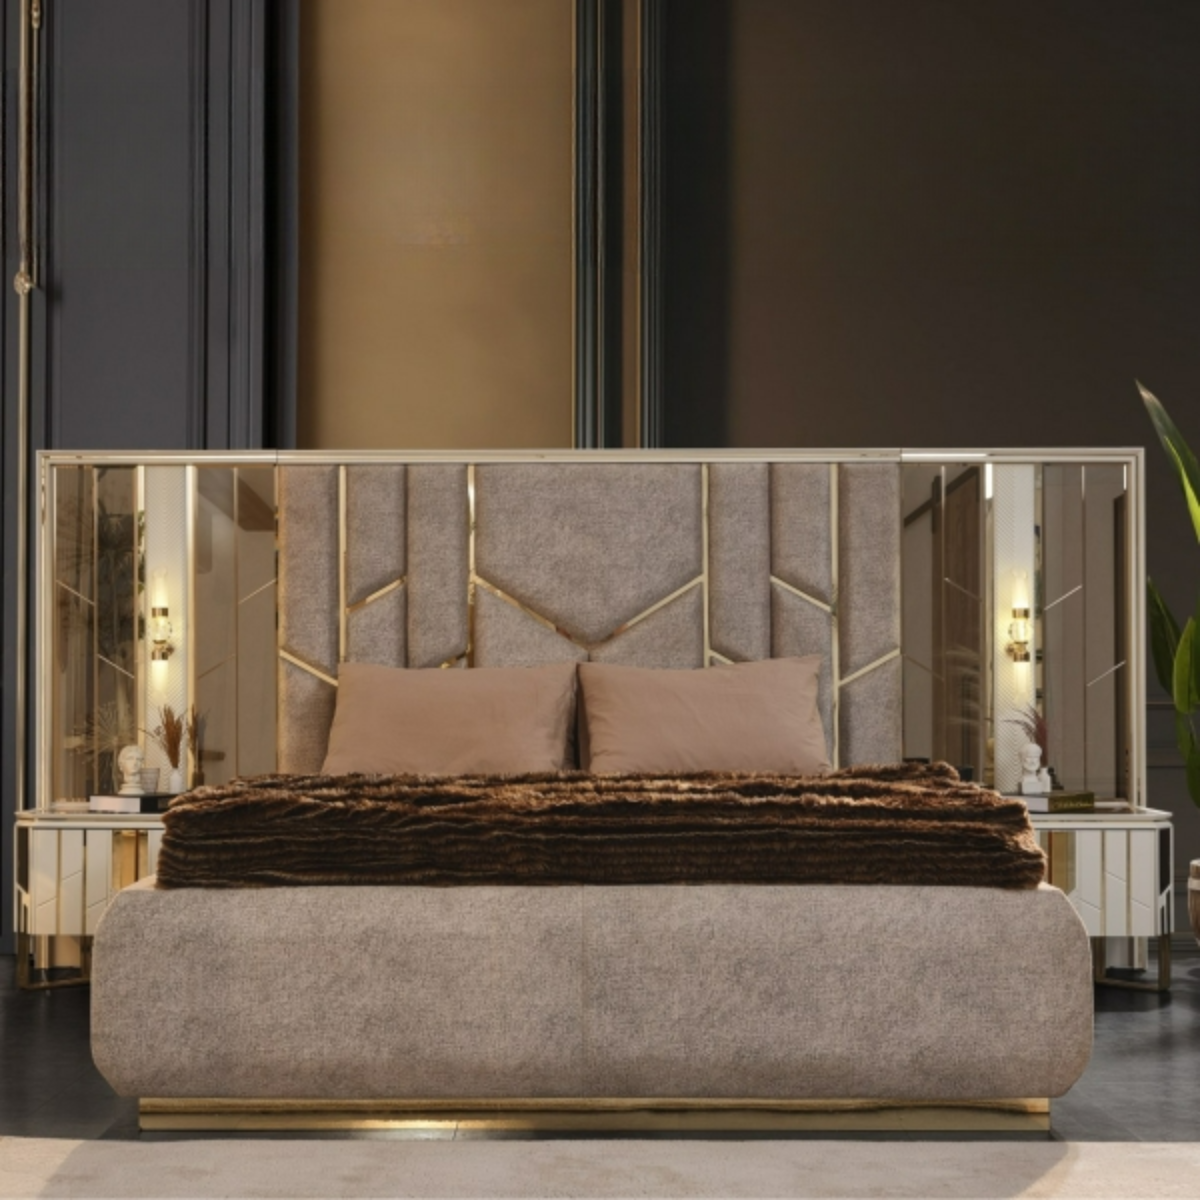 Dormitor modern cu detalii aurii, Nill